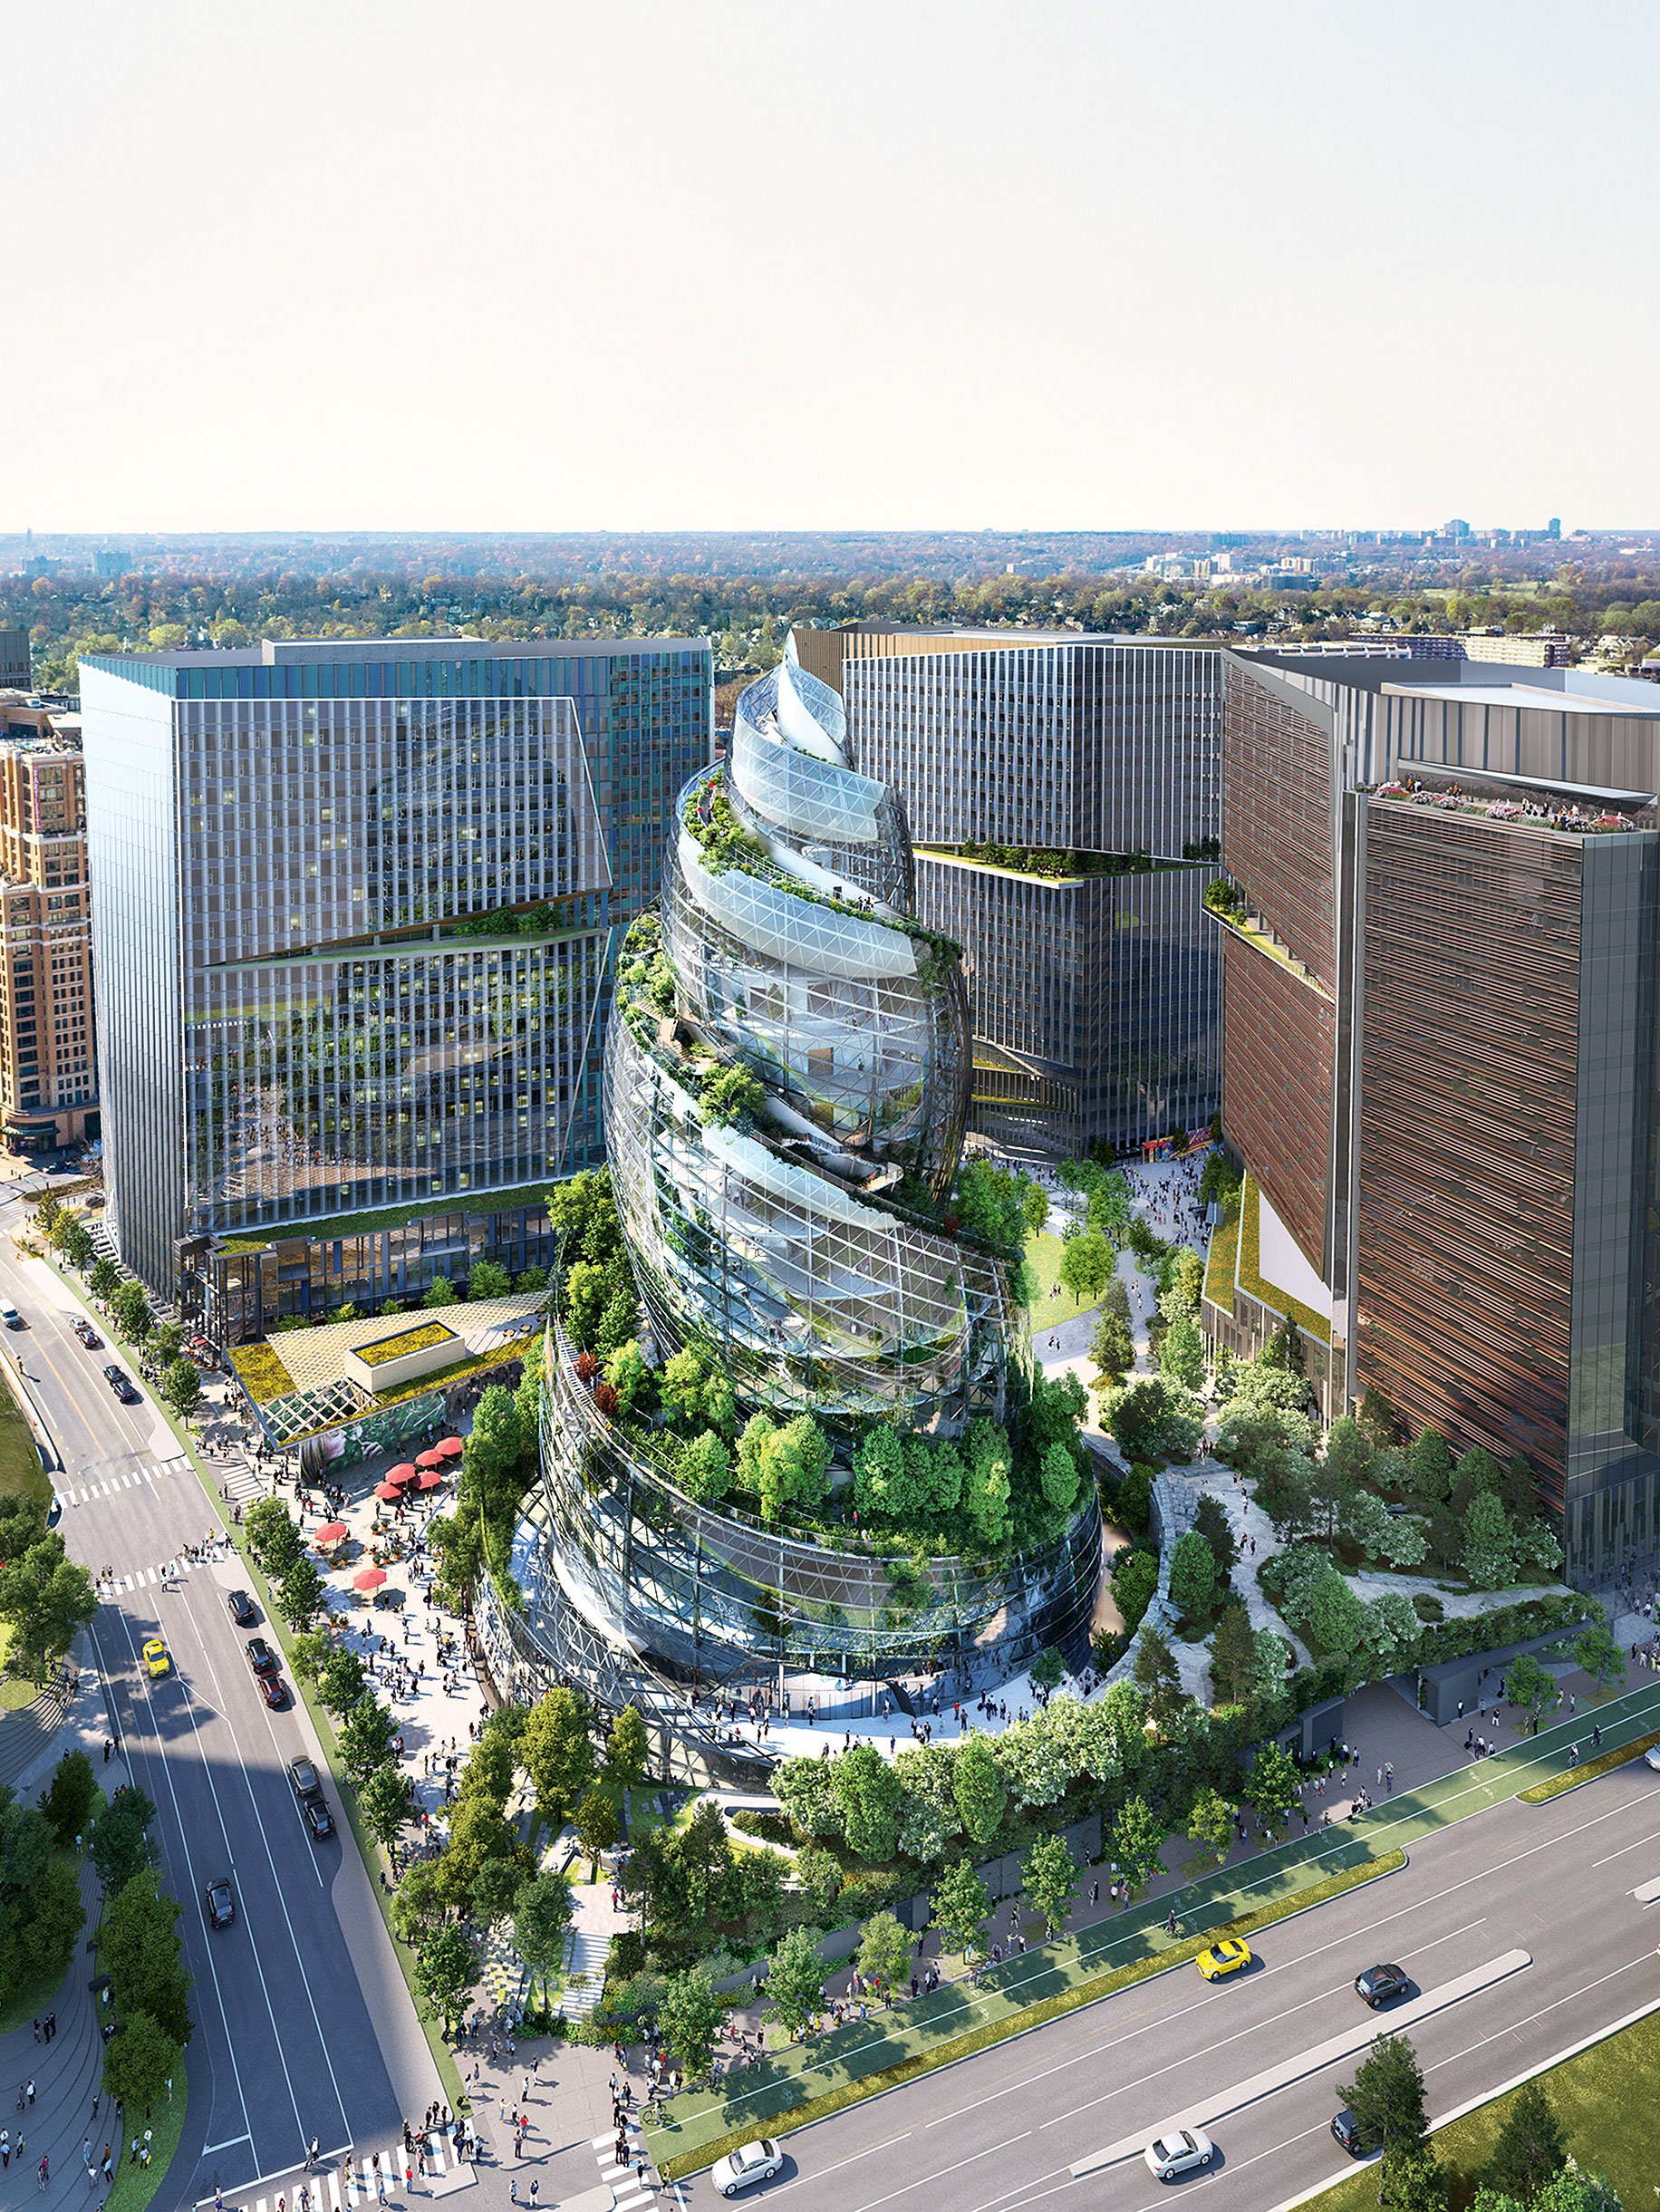 In der Spirale: Amazon plant einen spektakulären neuen Bau in Virginia. The Helix soll ein riesiges Bürogebäude werden. Braucht man das nach Corona? nbbj.com